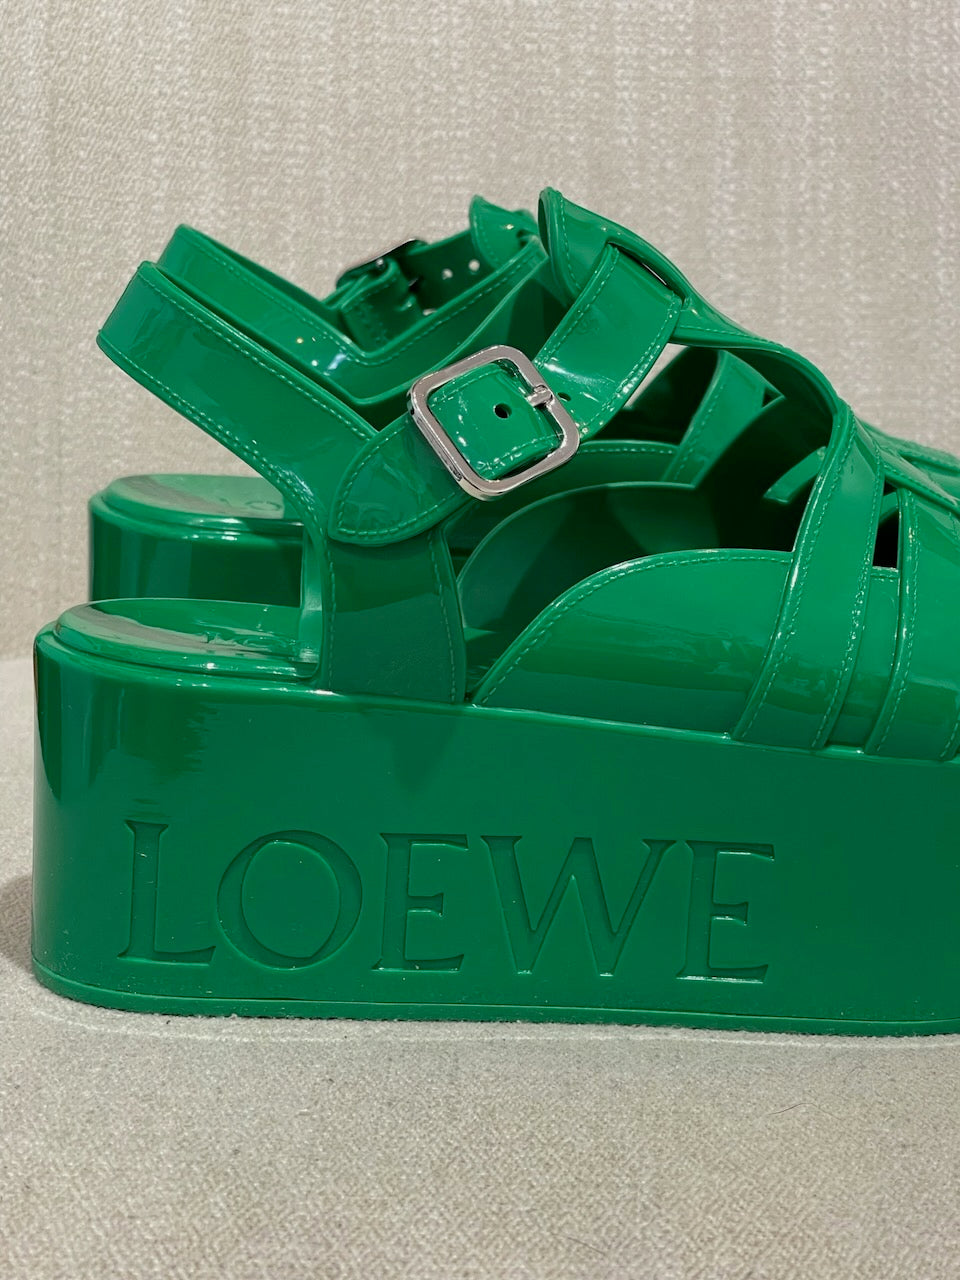 Sandales Loewe vertes T.39 NEUVES